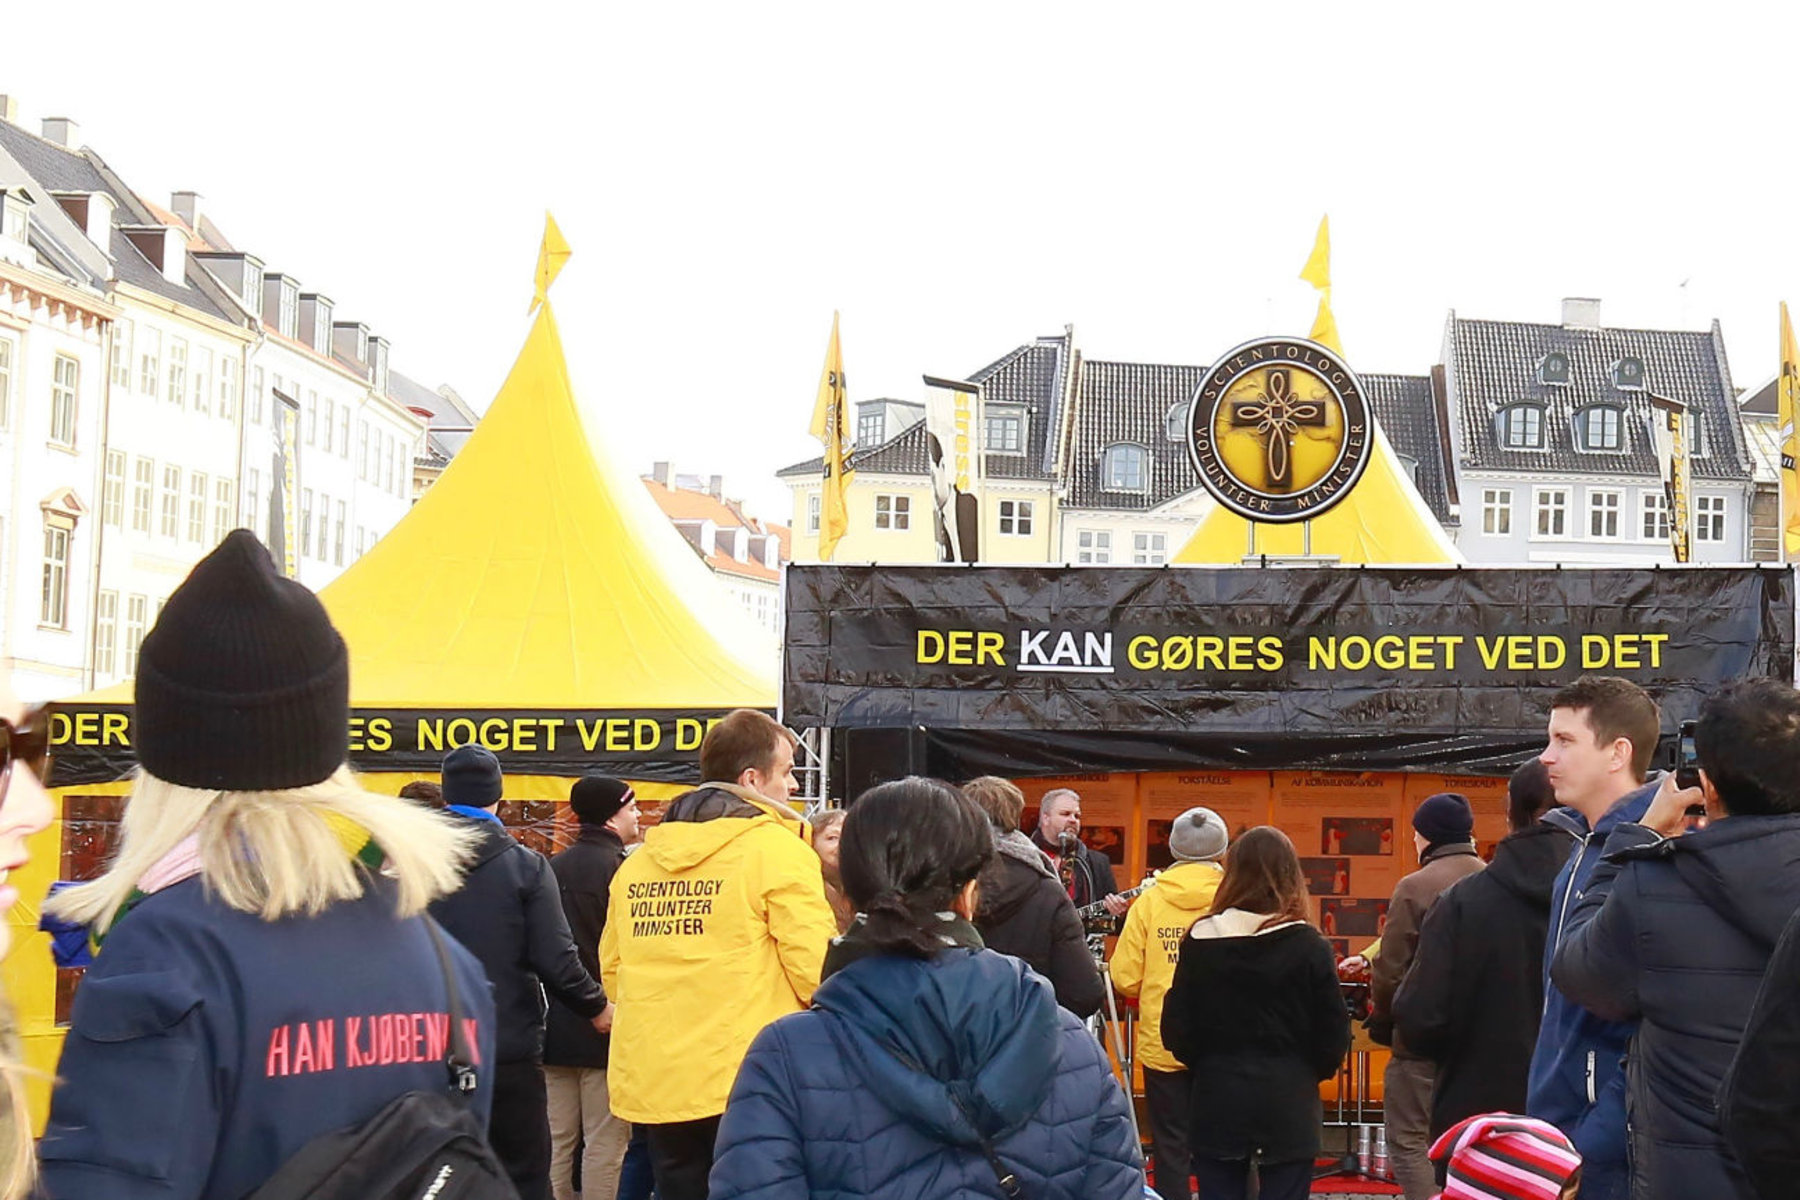 Une aide efficace dans la tente jaune au cœur de Copenhague